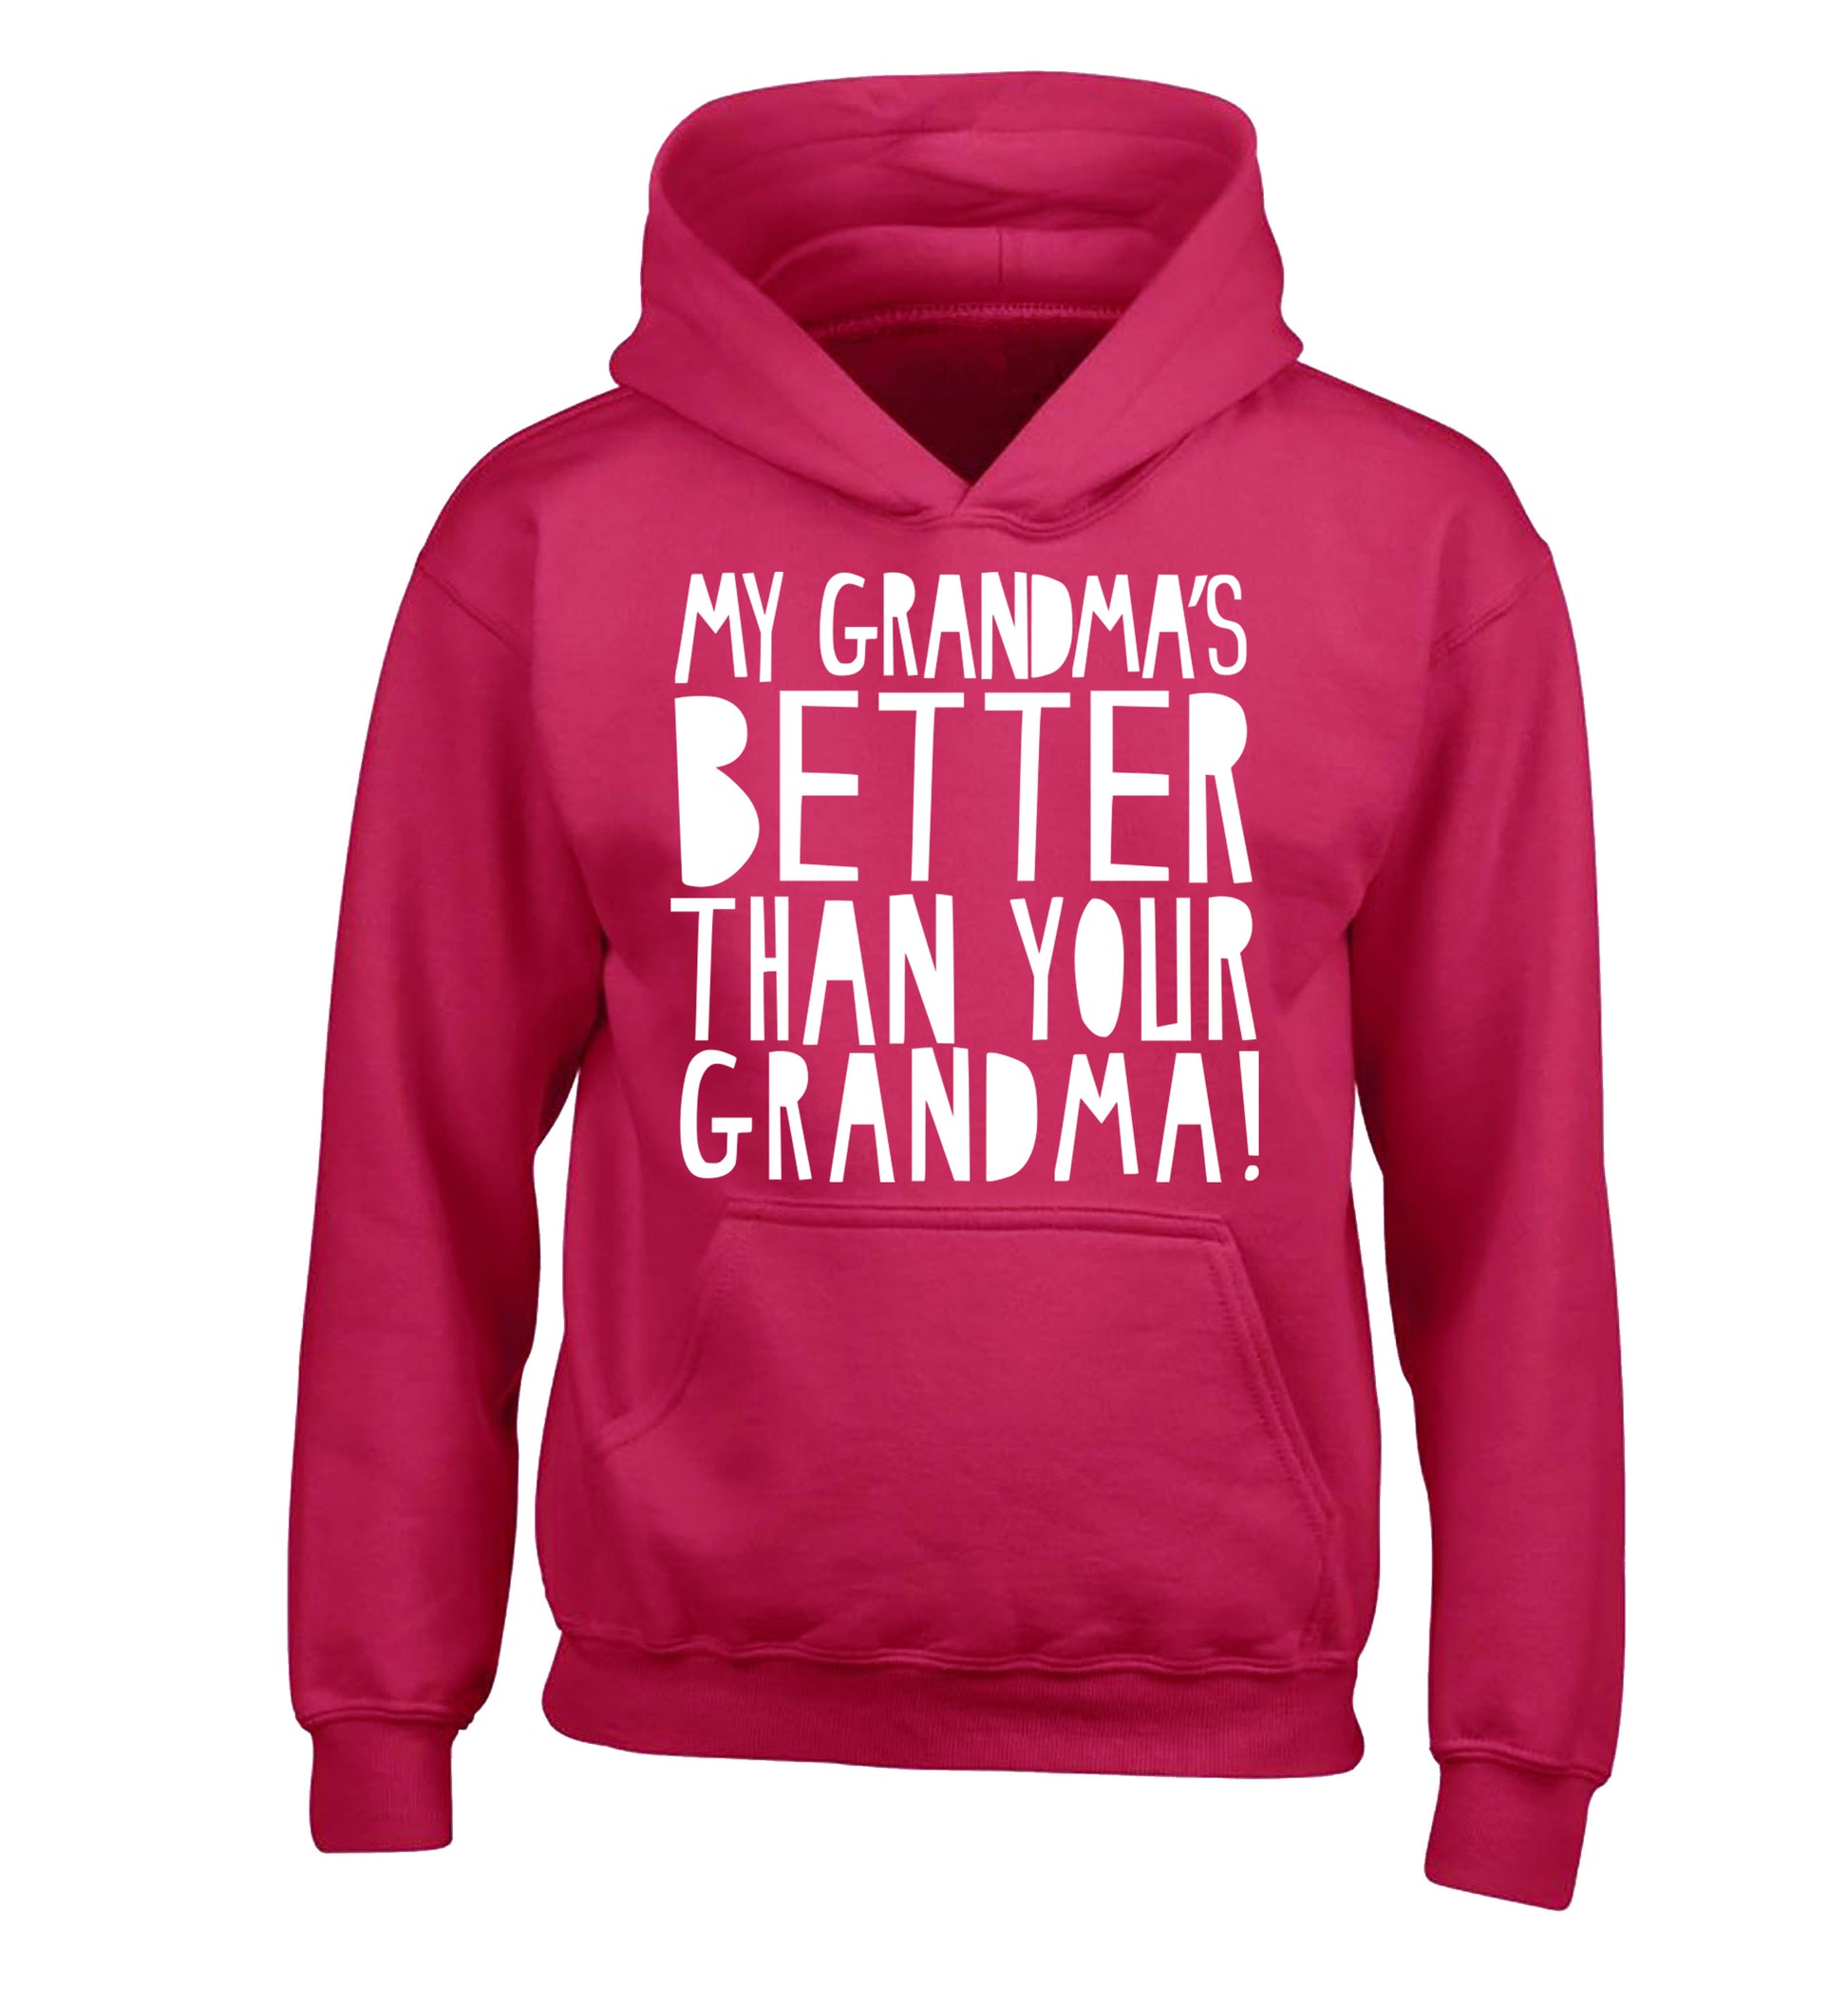 My grandma's better than your grandma children's pink hoodie 12-13 Years